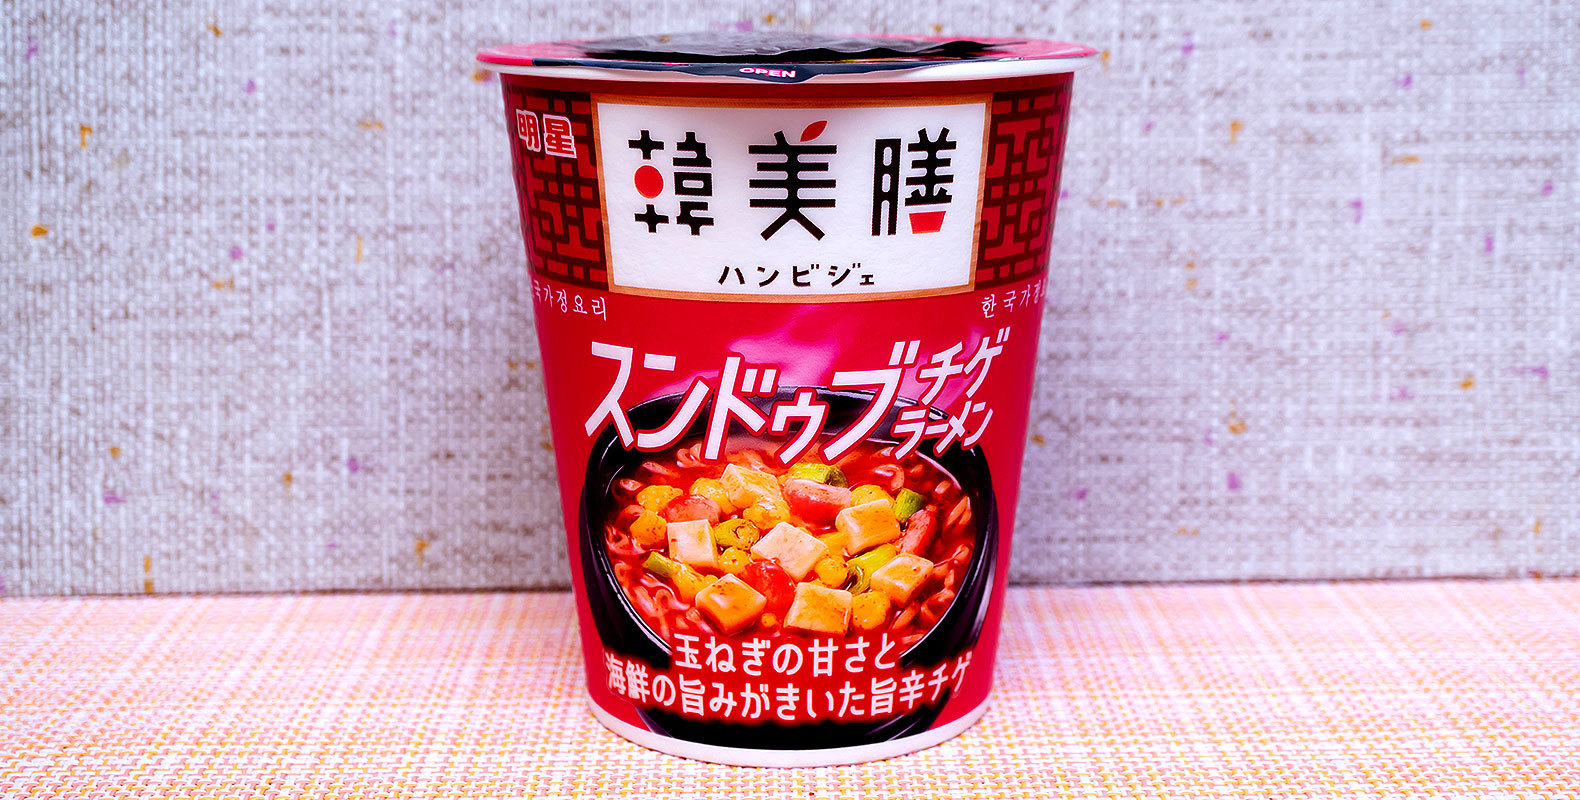 【ローソン】韓国レストランの純豆腐の味をカップ麺で再現！「韓美膳 スンドゥブチゲラーメン」を実食レビュー